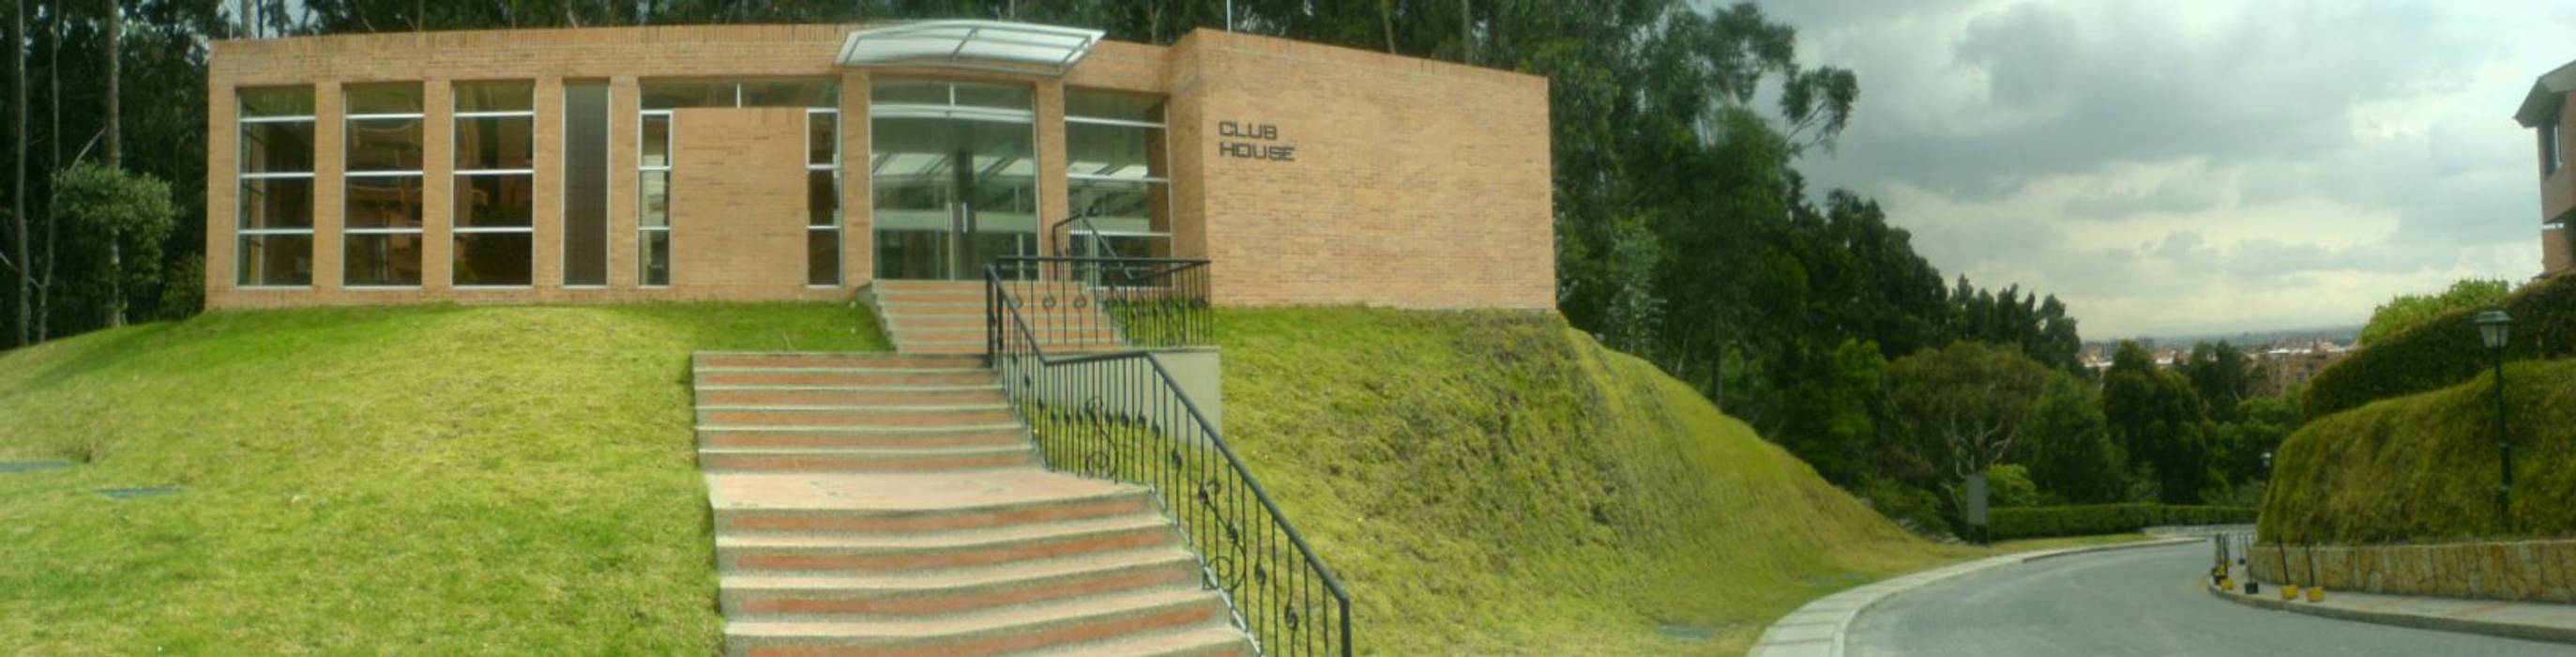 Club House, Vertice Oficina de Arquitectura Vertice Oficina de Arquitectura Piscinas de estilo moderno Ladrillos